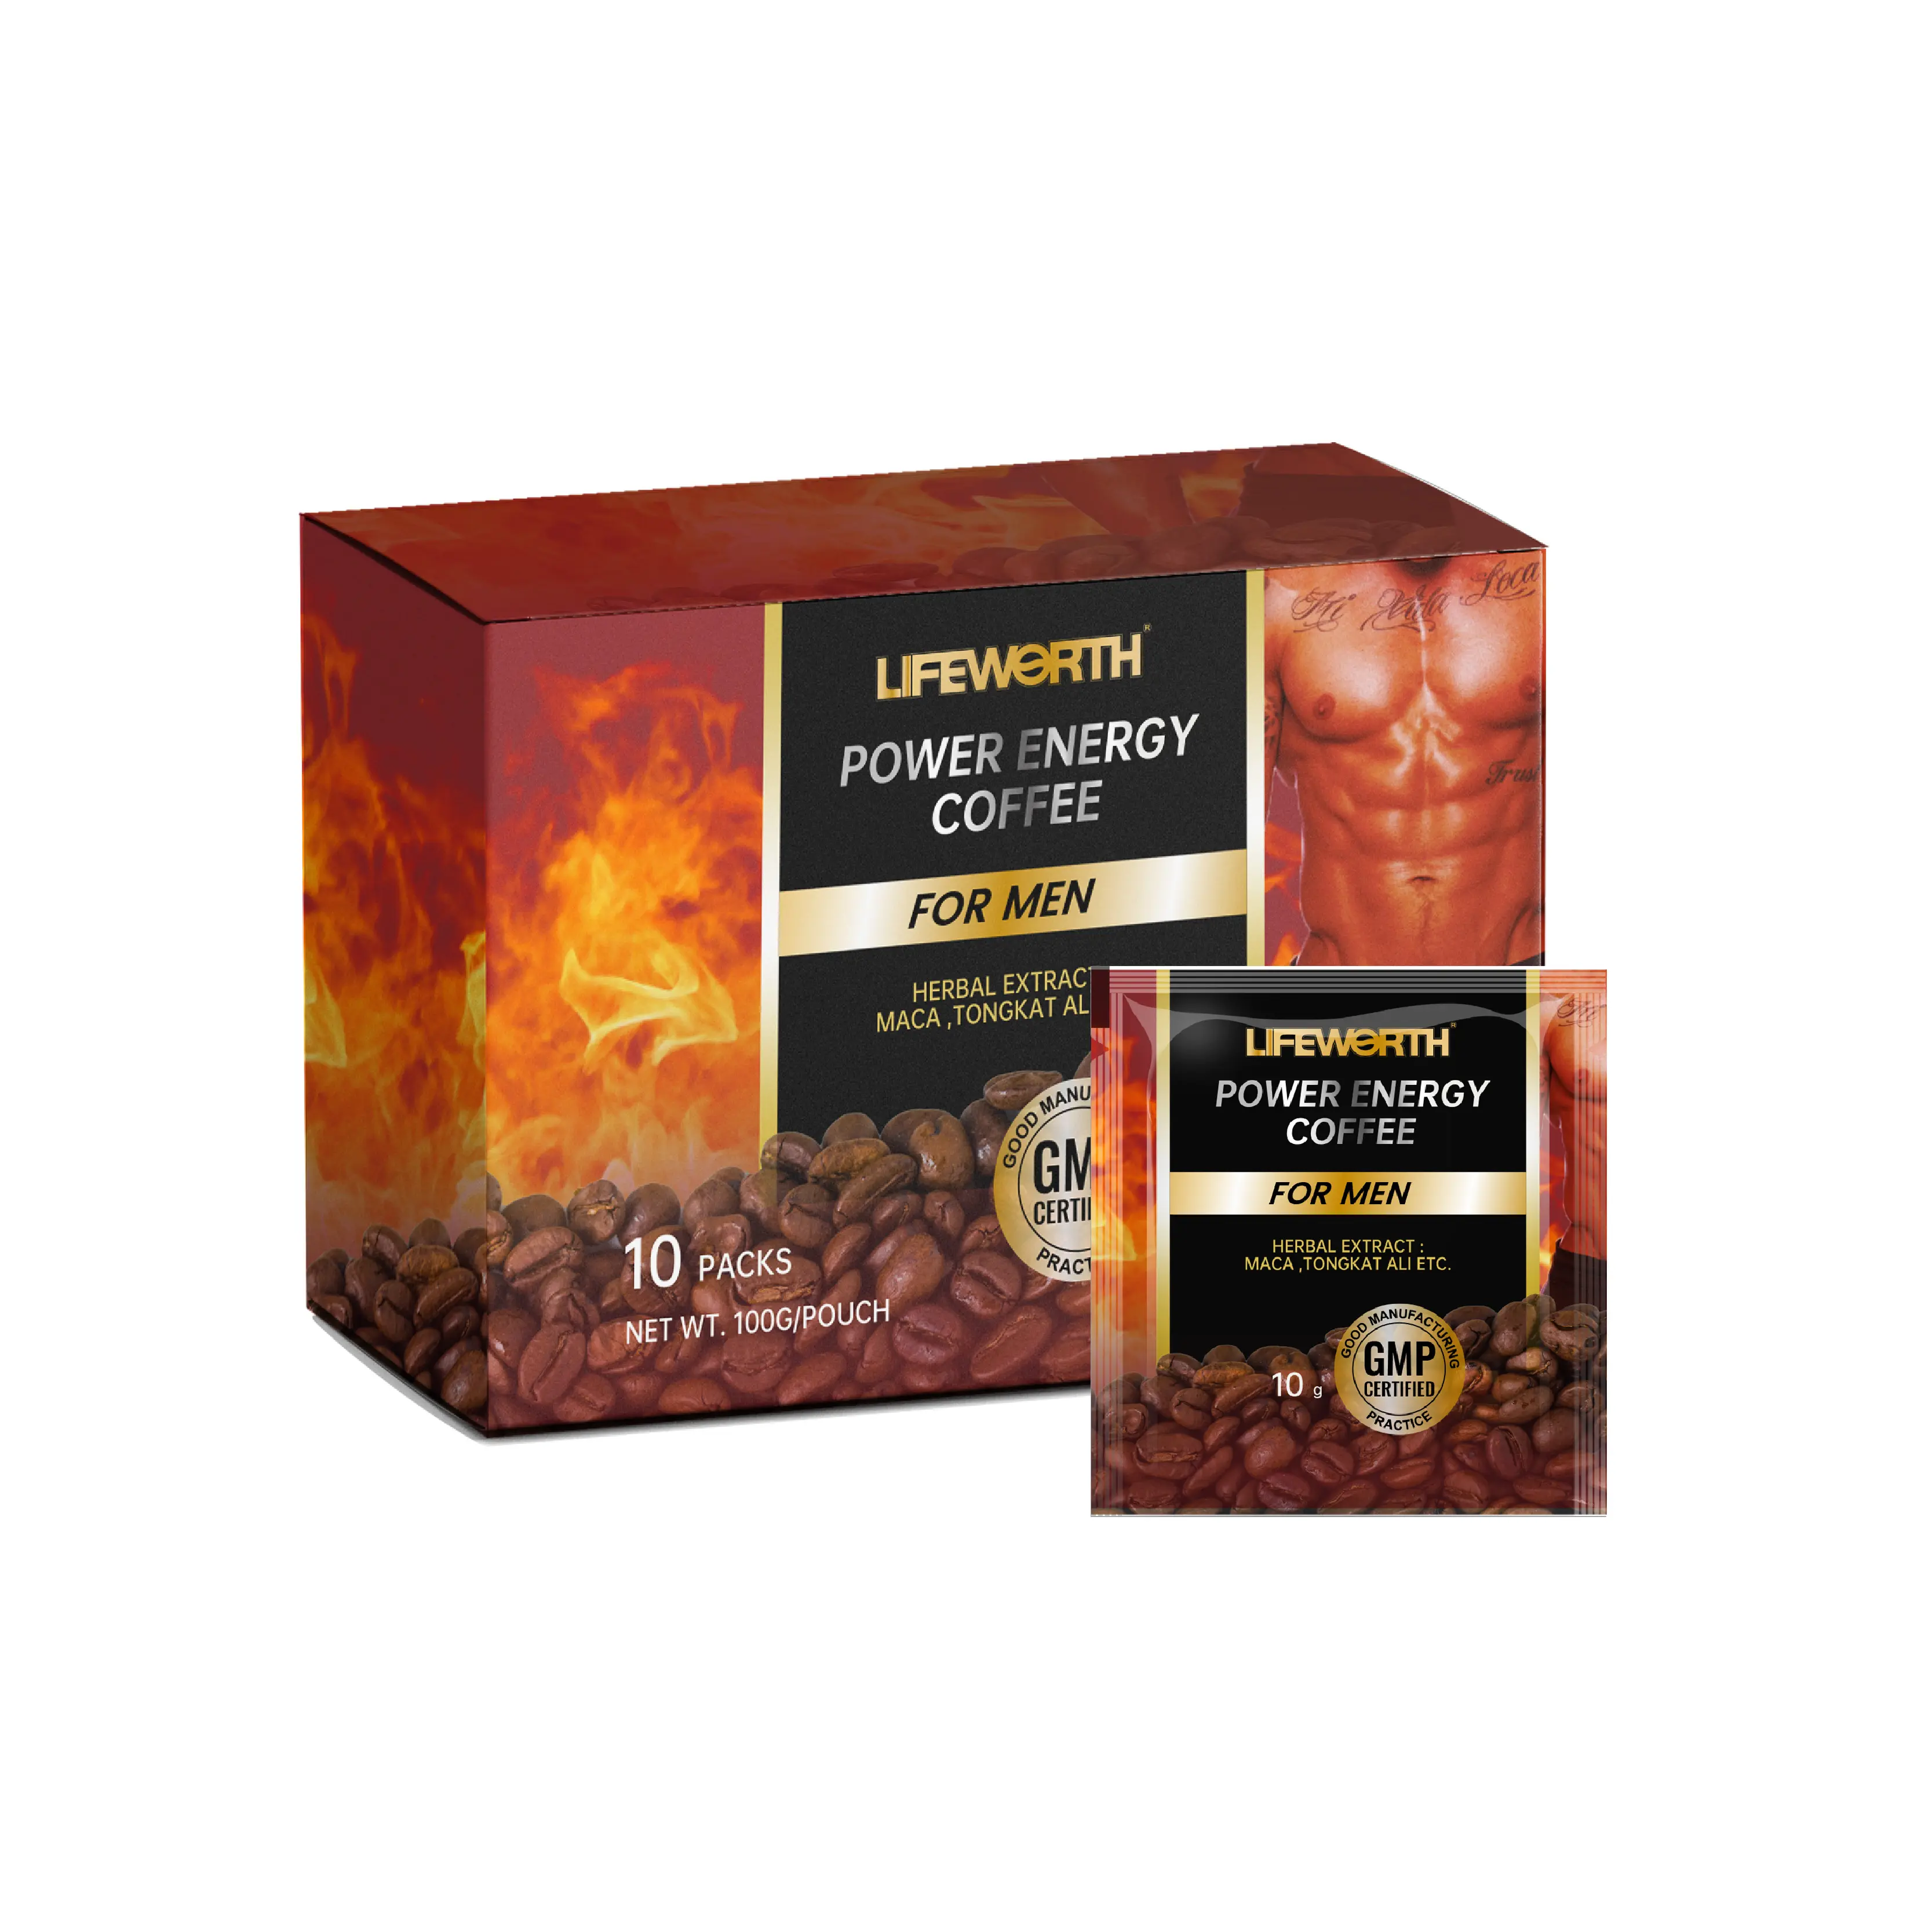 Lifeworth man power energy coffee maschio vitalità salute nero estratto di ostrica istantanea Maca caffè